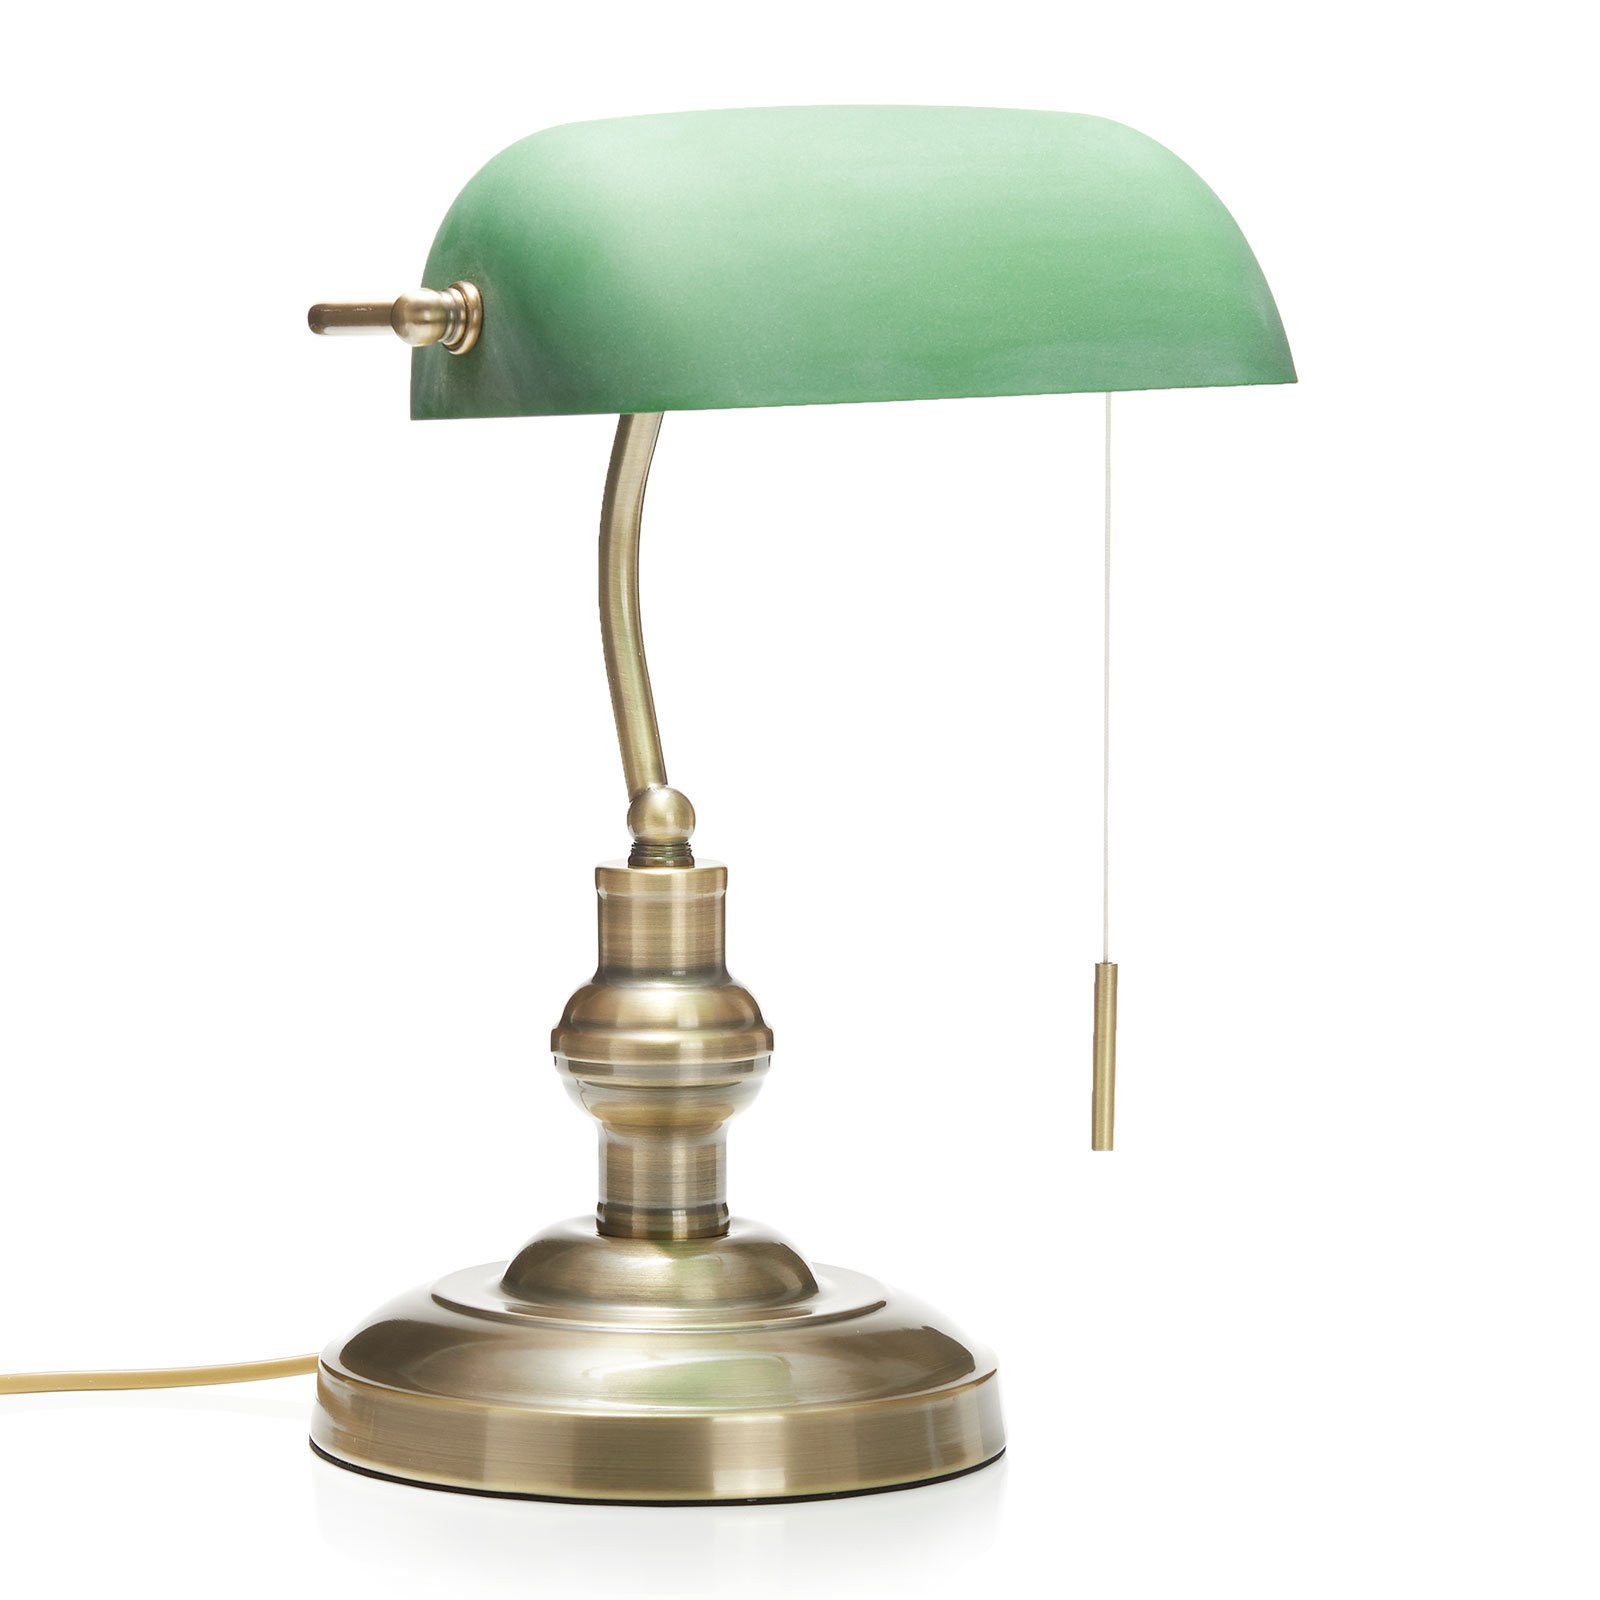 Milenka - lampa na psací stůl se zeleným stínidlem